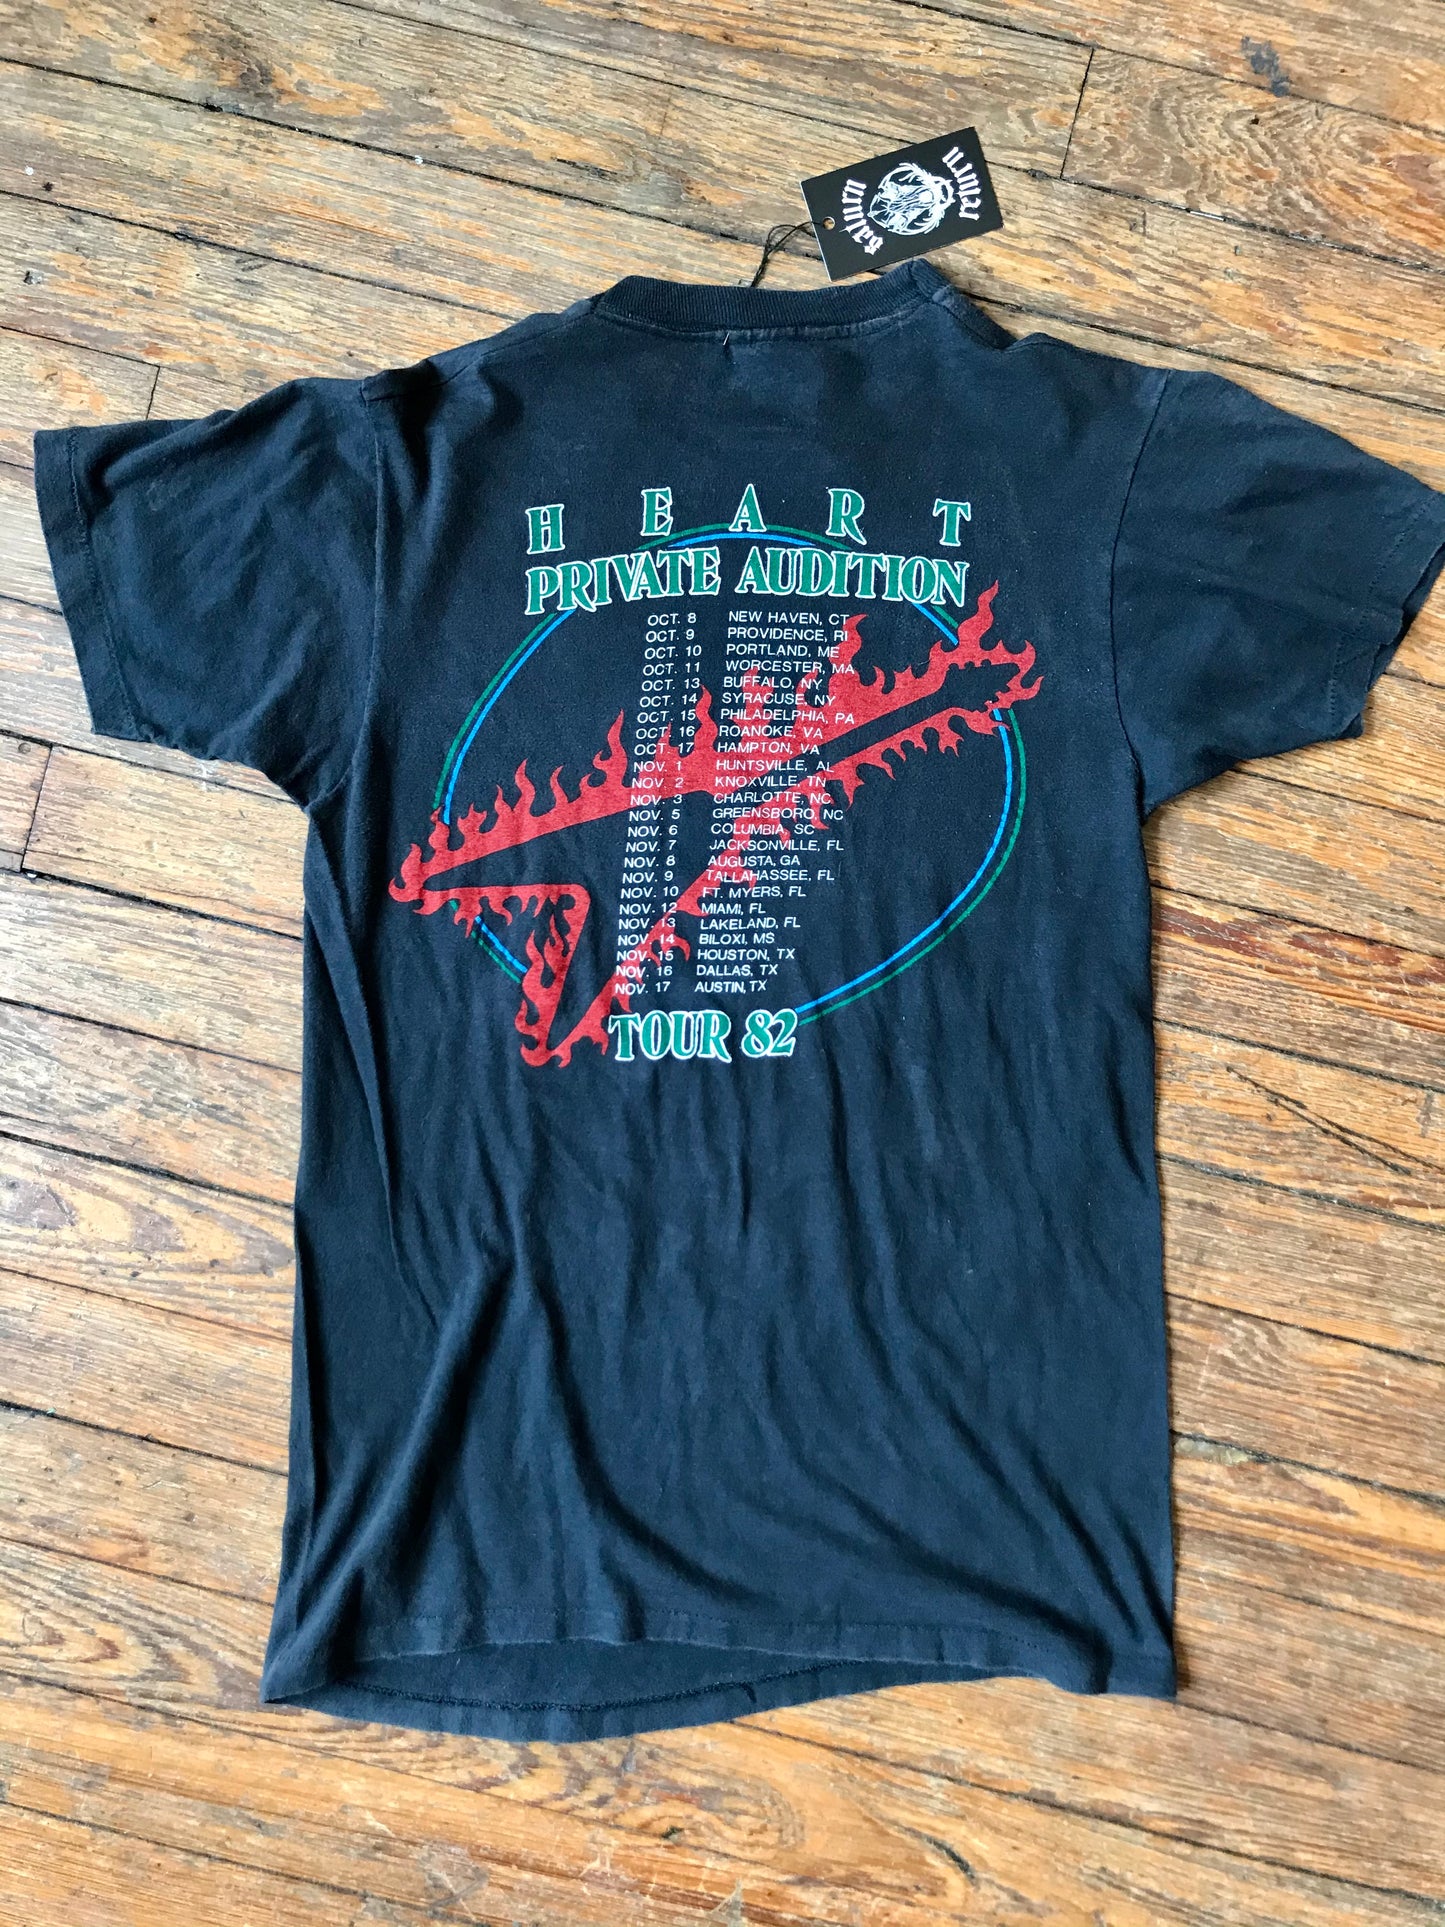 Vintage 1982 Heart Private Audition Tour T-Shirt